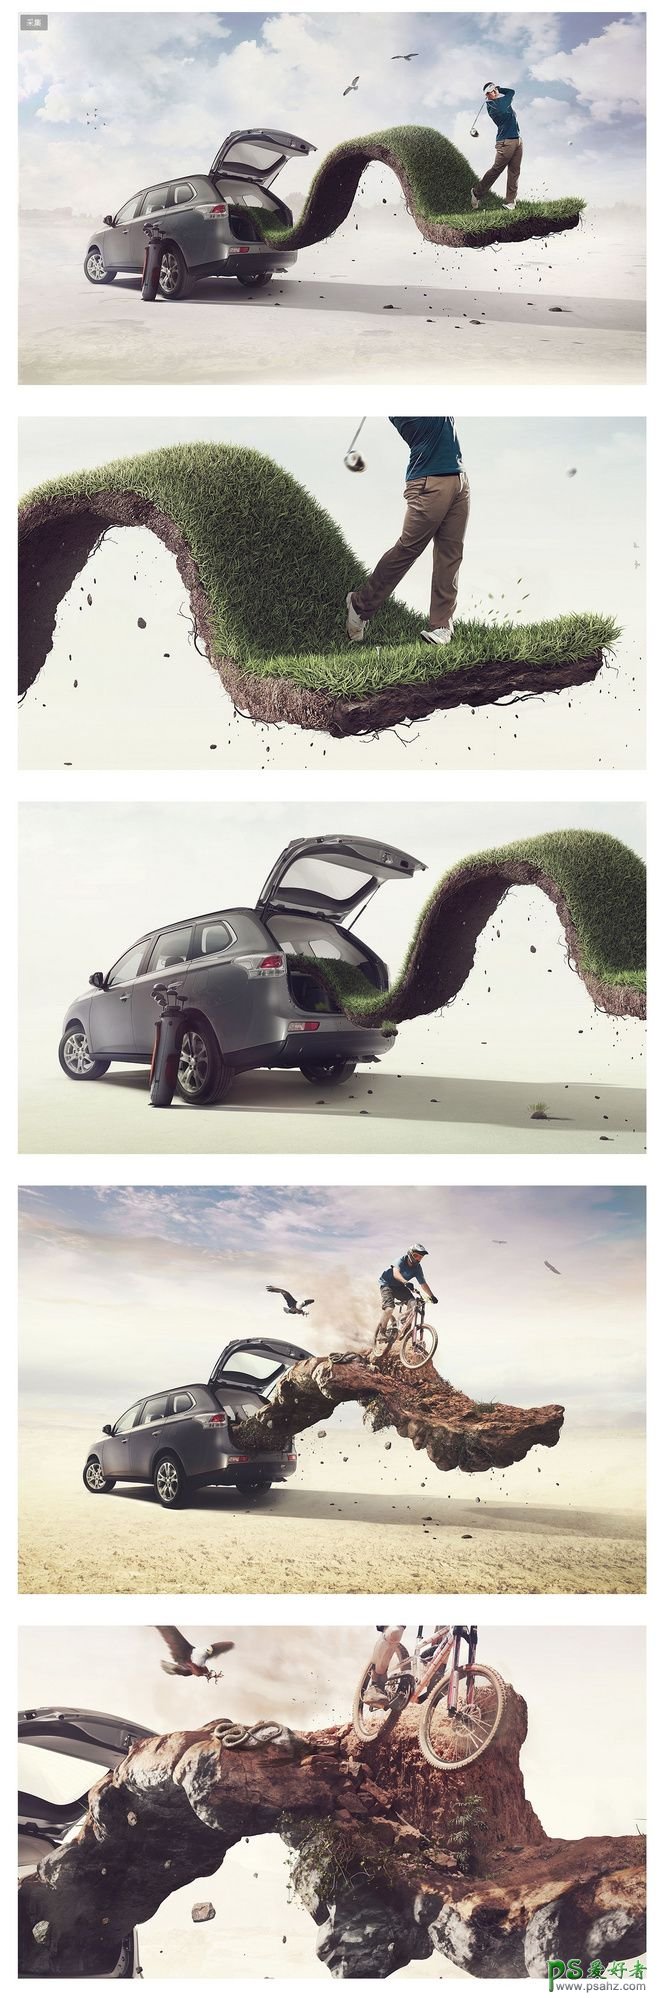 创意越野车宣传广告设计欣赏，适合外出休闲运动的汽车海报设计。